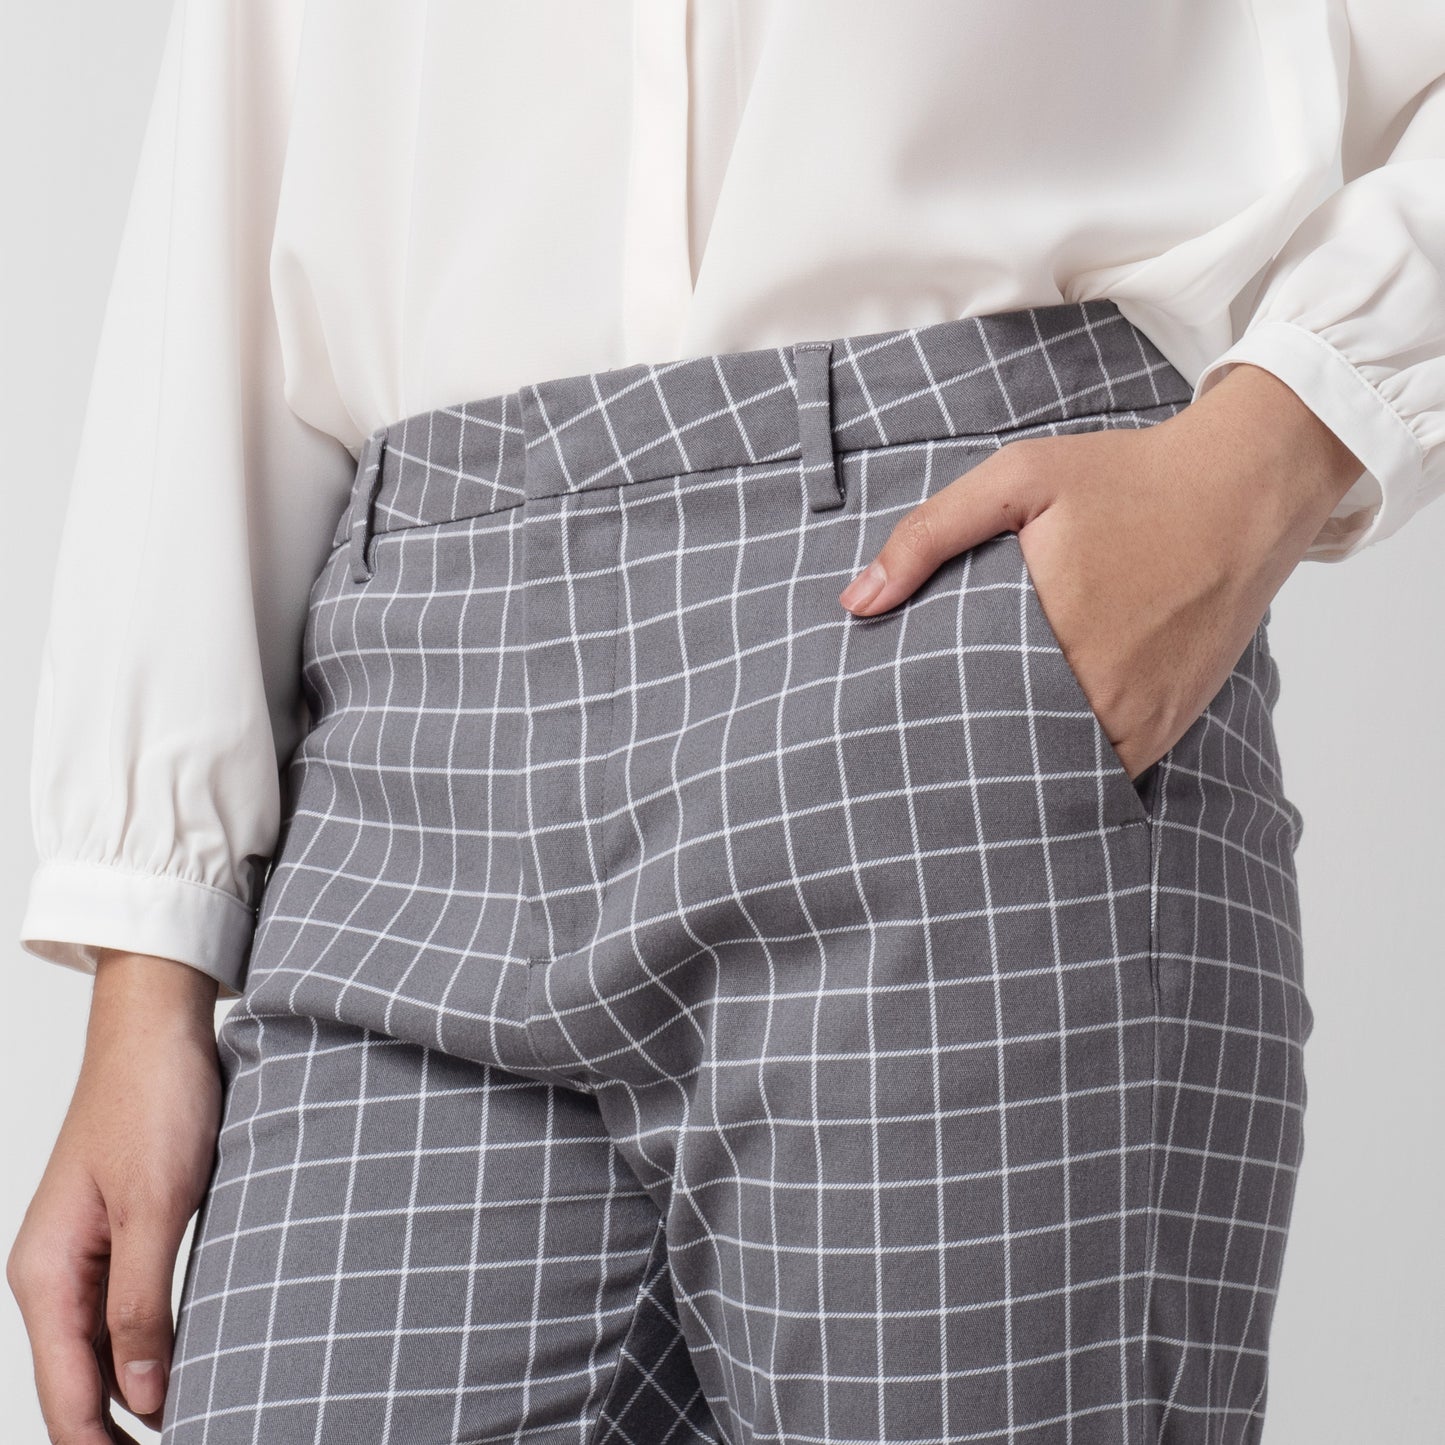 Celana Tartan Wanita "Narae" Plaid Pants Kotak Kotak Grey 260-32682